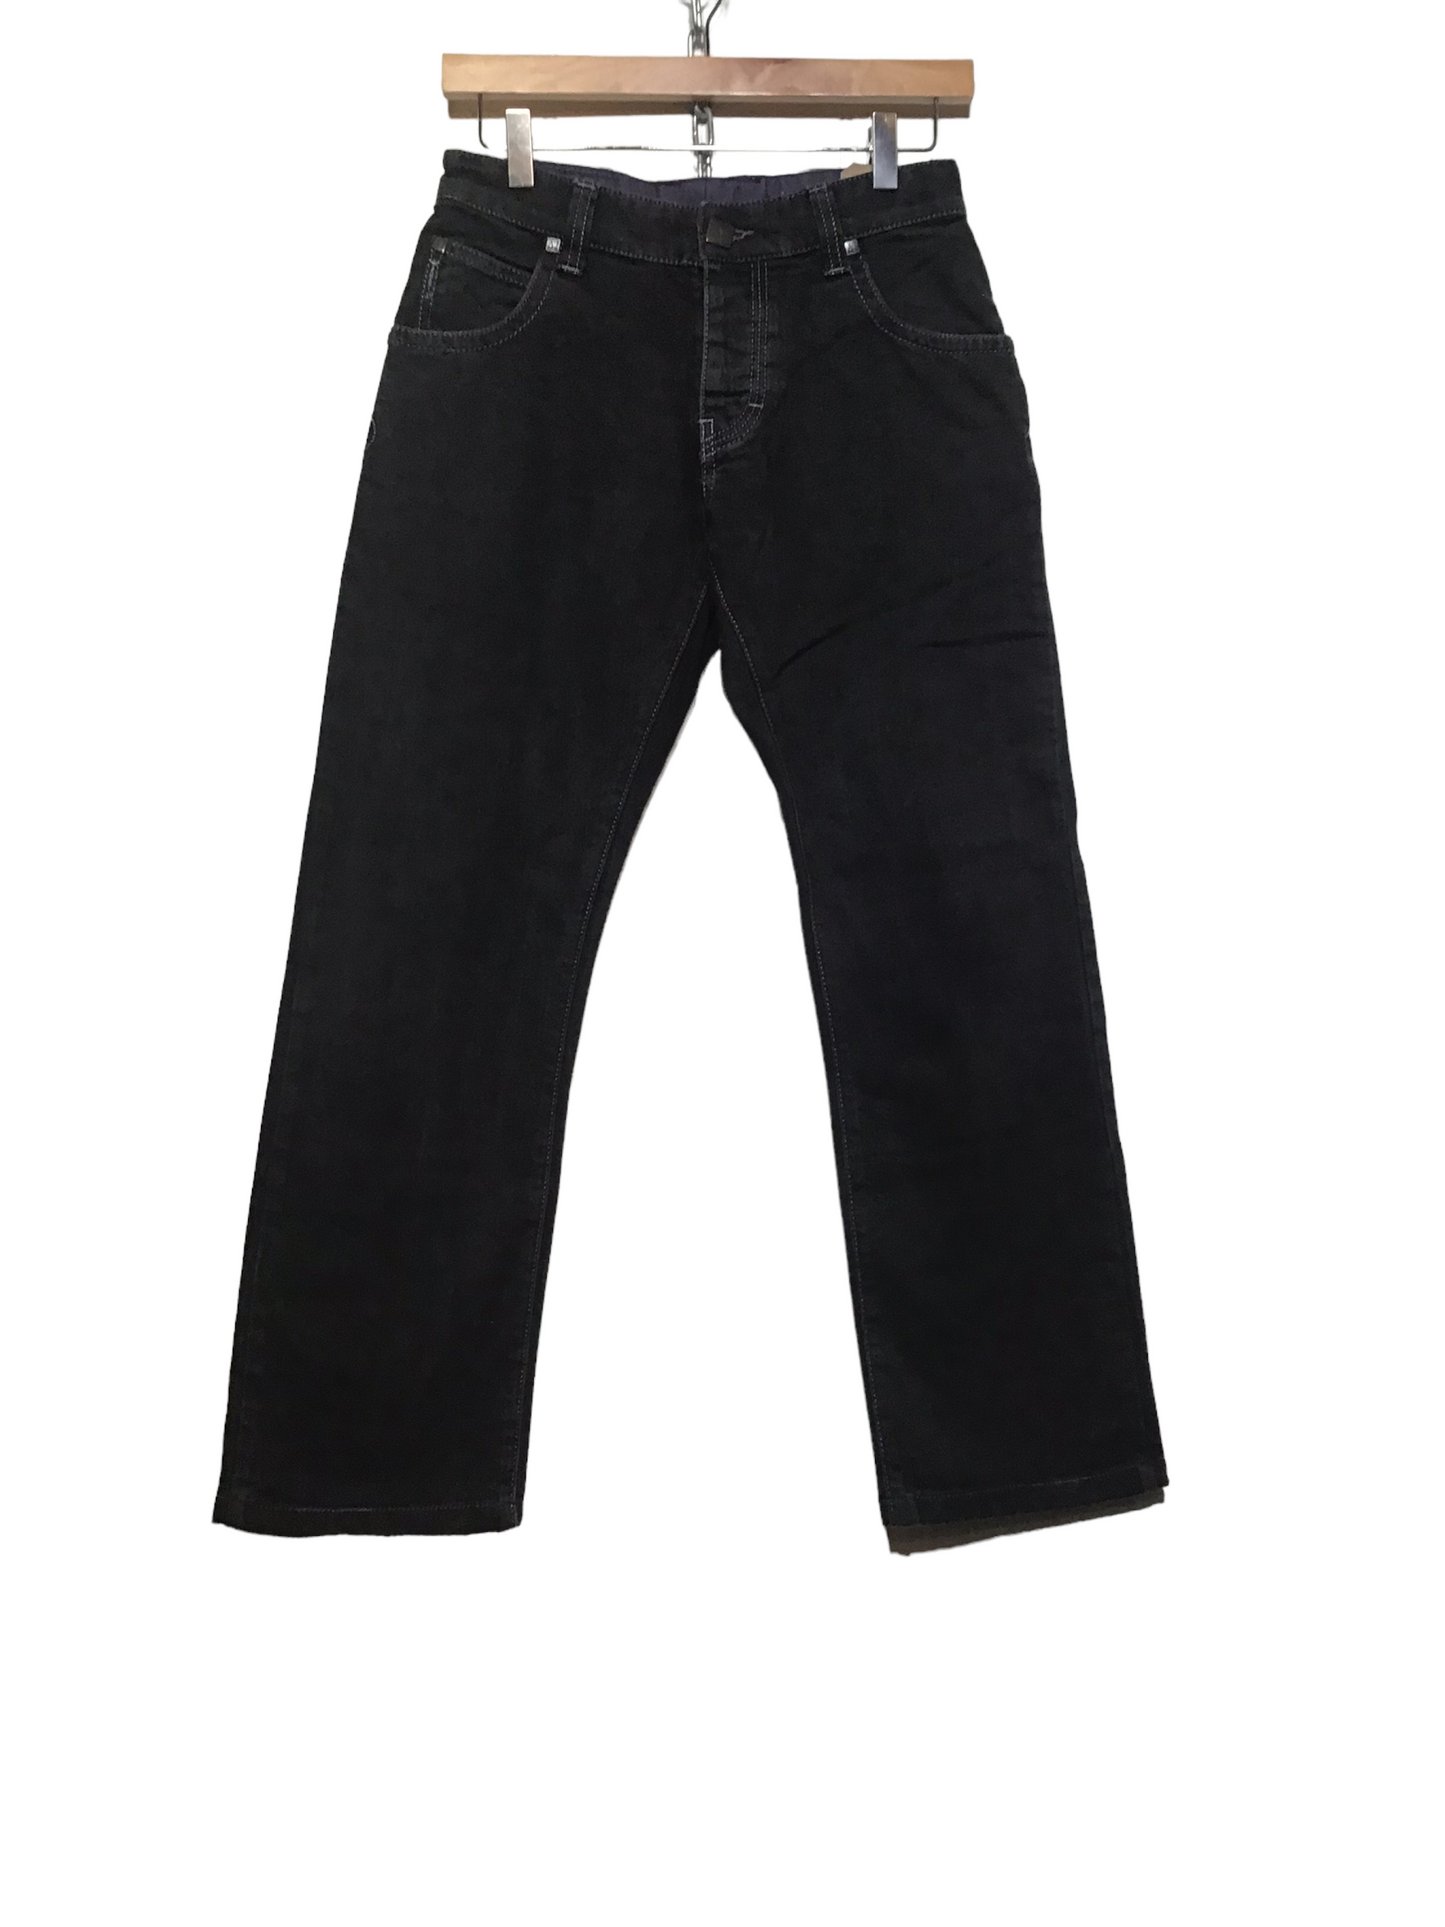 Armani Black Jeans (28X27)